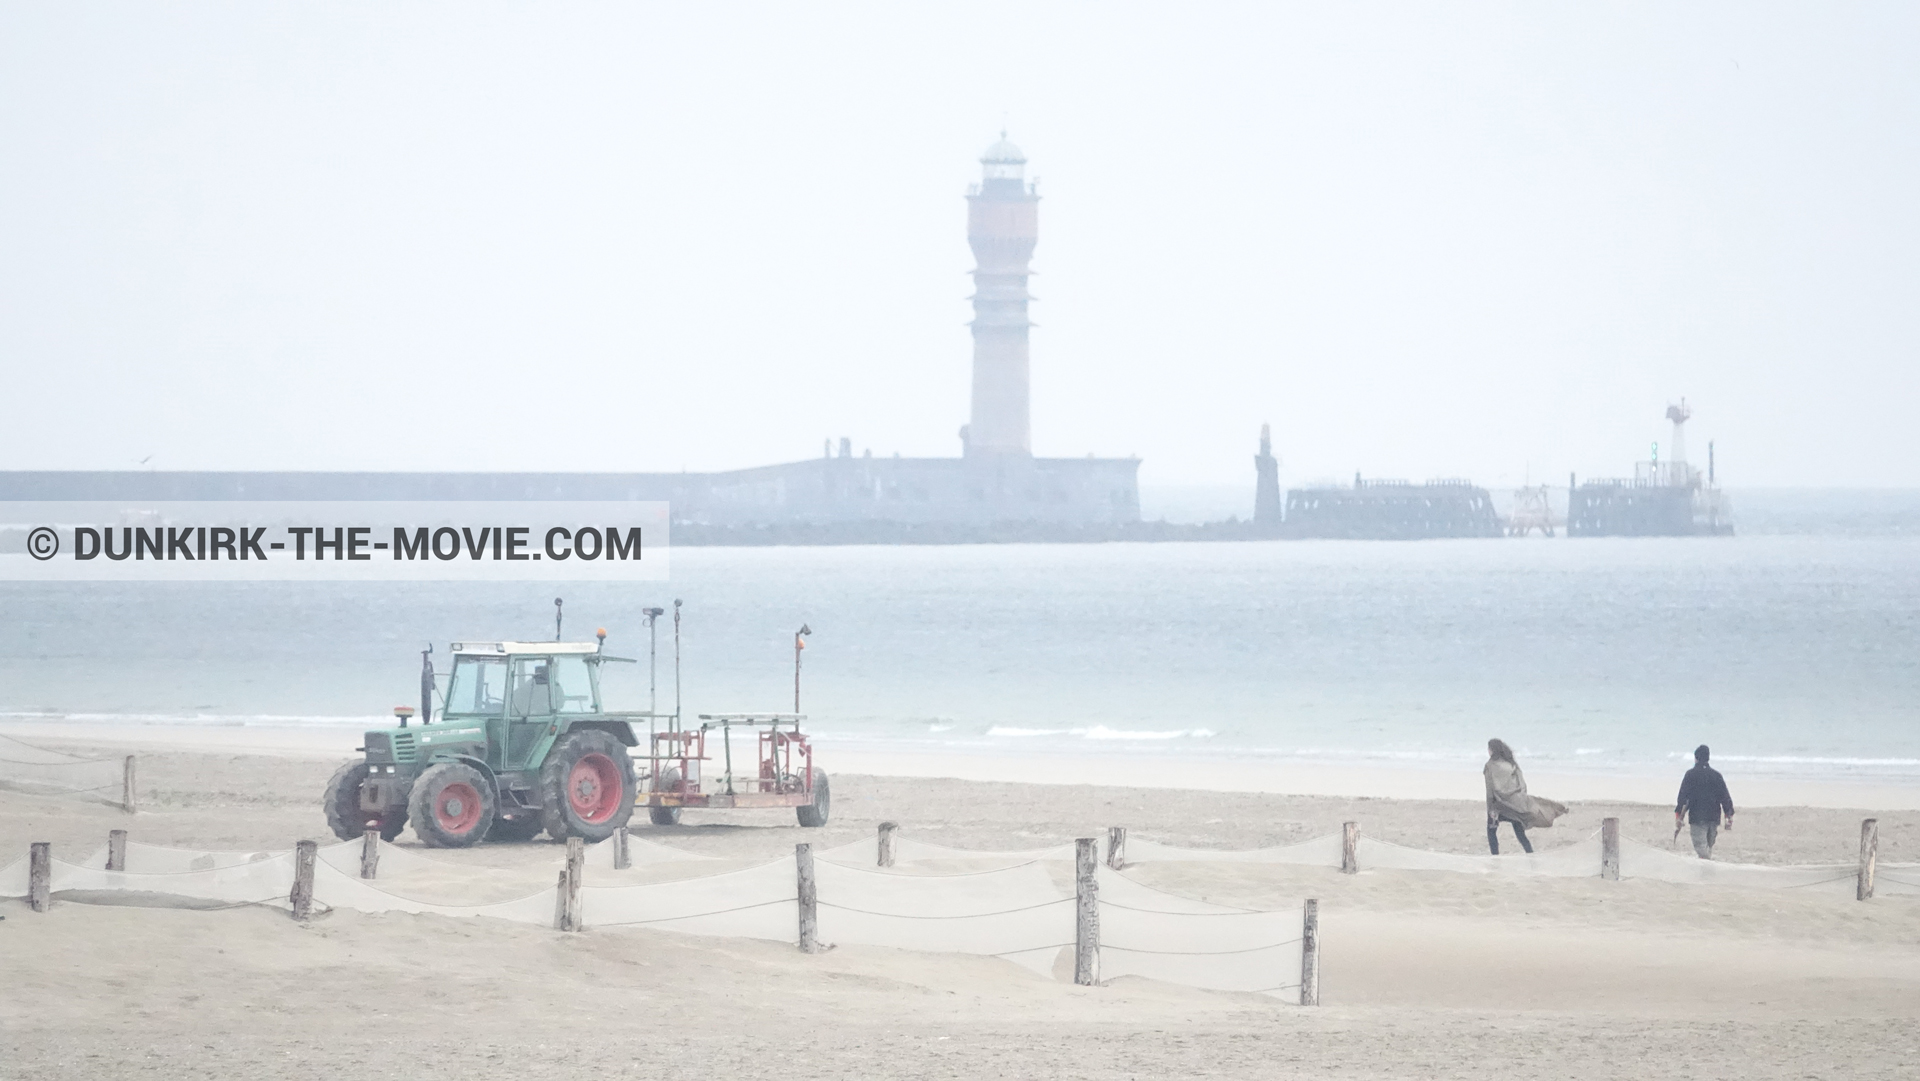 Fotos con faro de Saint-Pol-sur-Mer, playa,  durante el rodaje de la película Dunkerque de Nolan